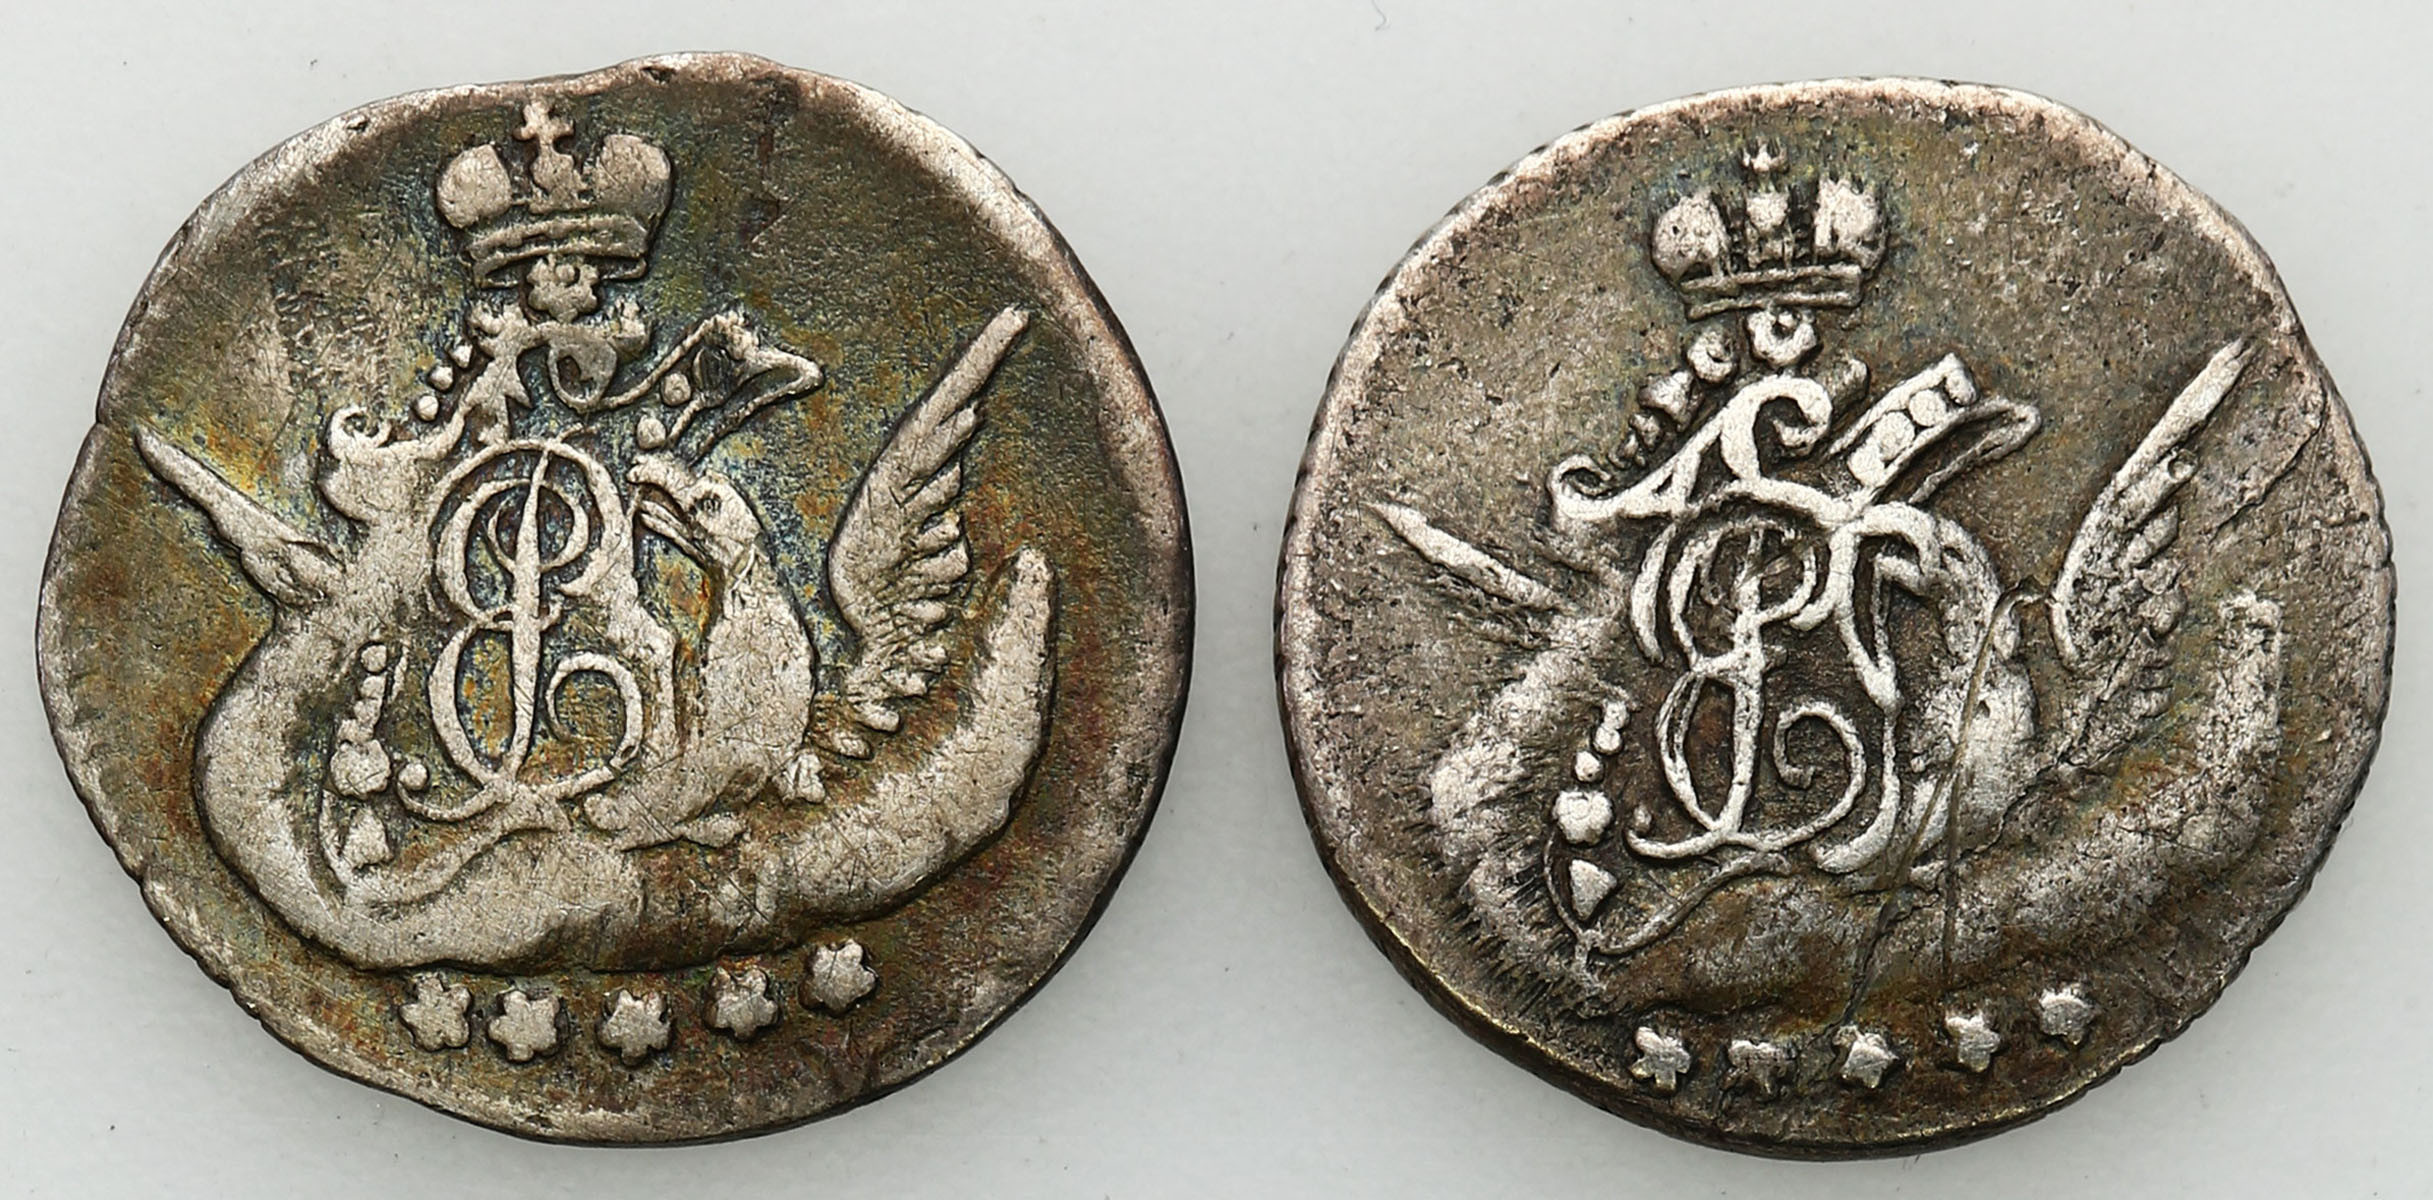 Rosja. Elżbieta 5 kopiejek 1757, 1758 СПБ, Petersburg, zestaw 2 monet